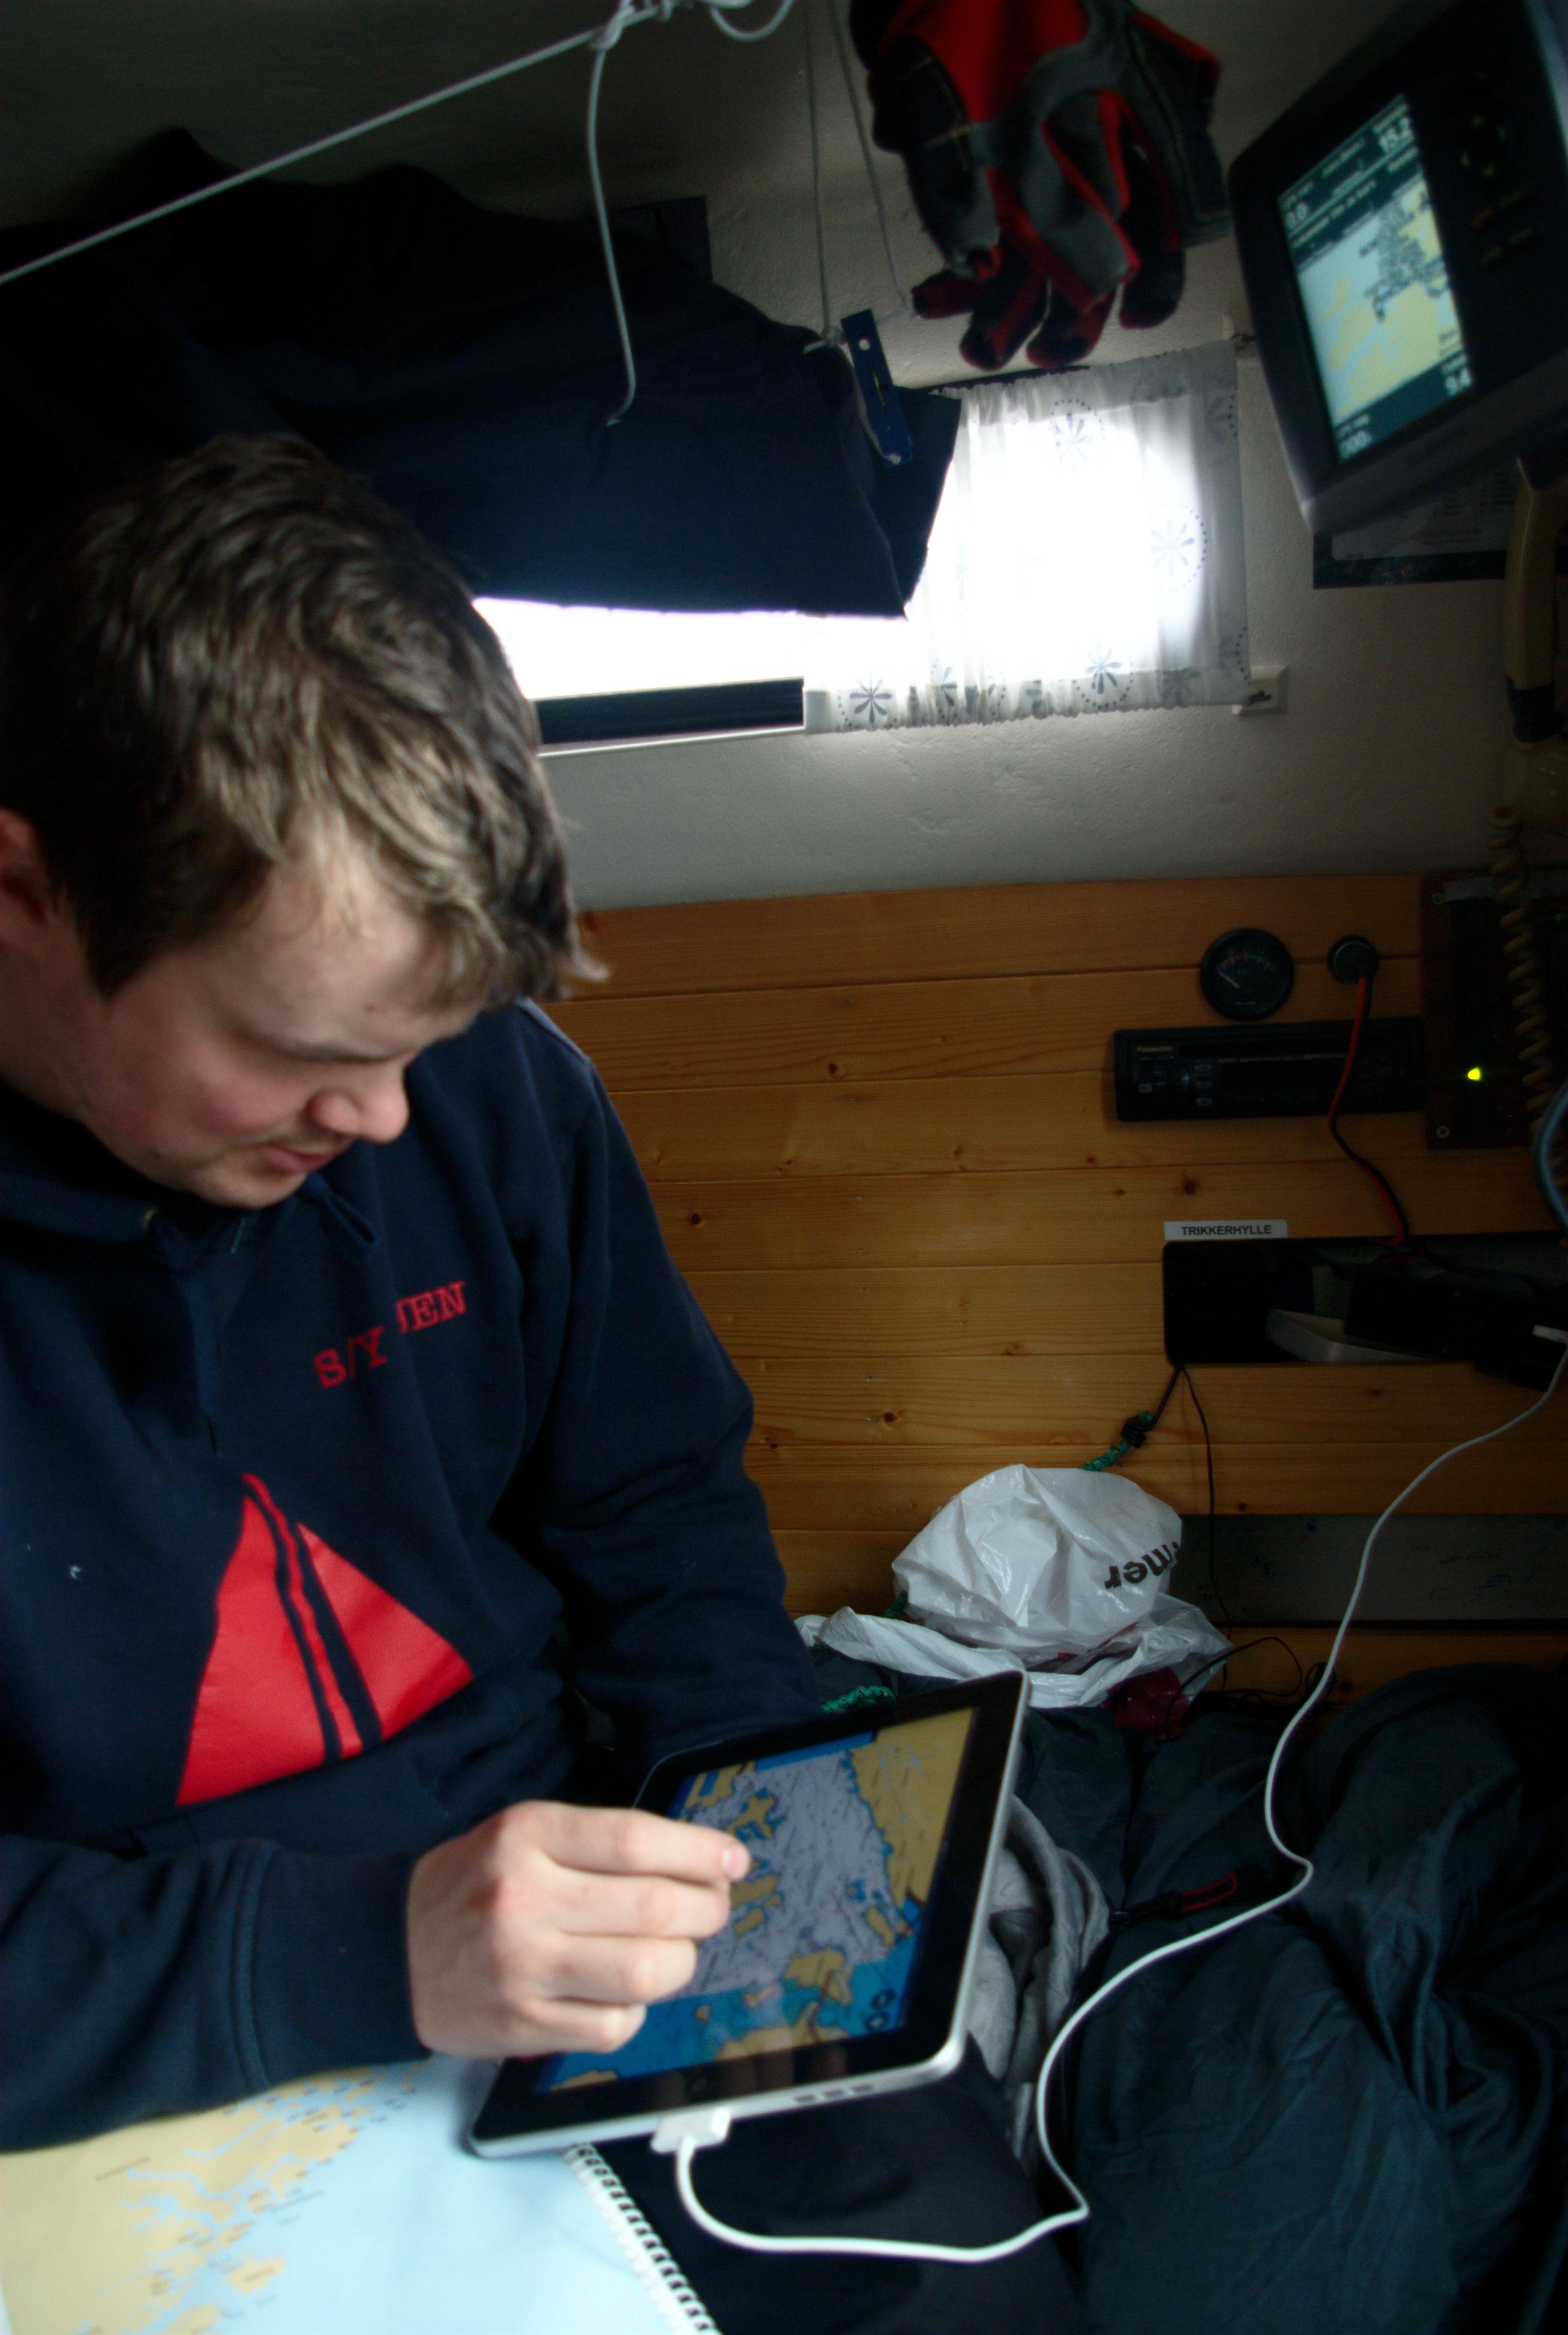 Kaptein Øyvind Nilssen på seilbåten S/Y Duen har jobbet på sjøen som skipselektriker, og går nå styrmannsskole. Han liker iPad og Navionics Marine som planleggingsverktøy.